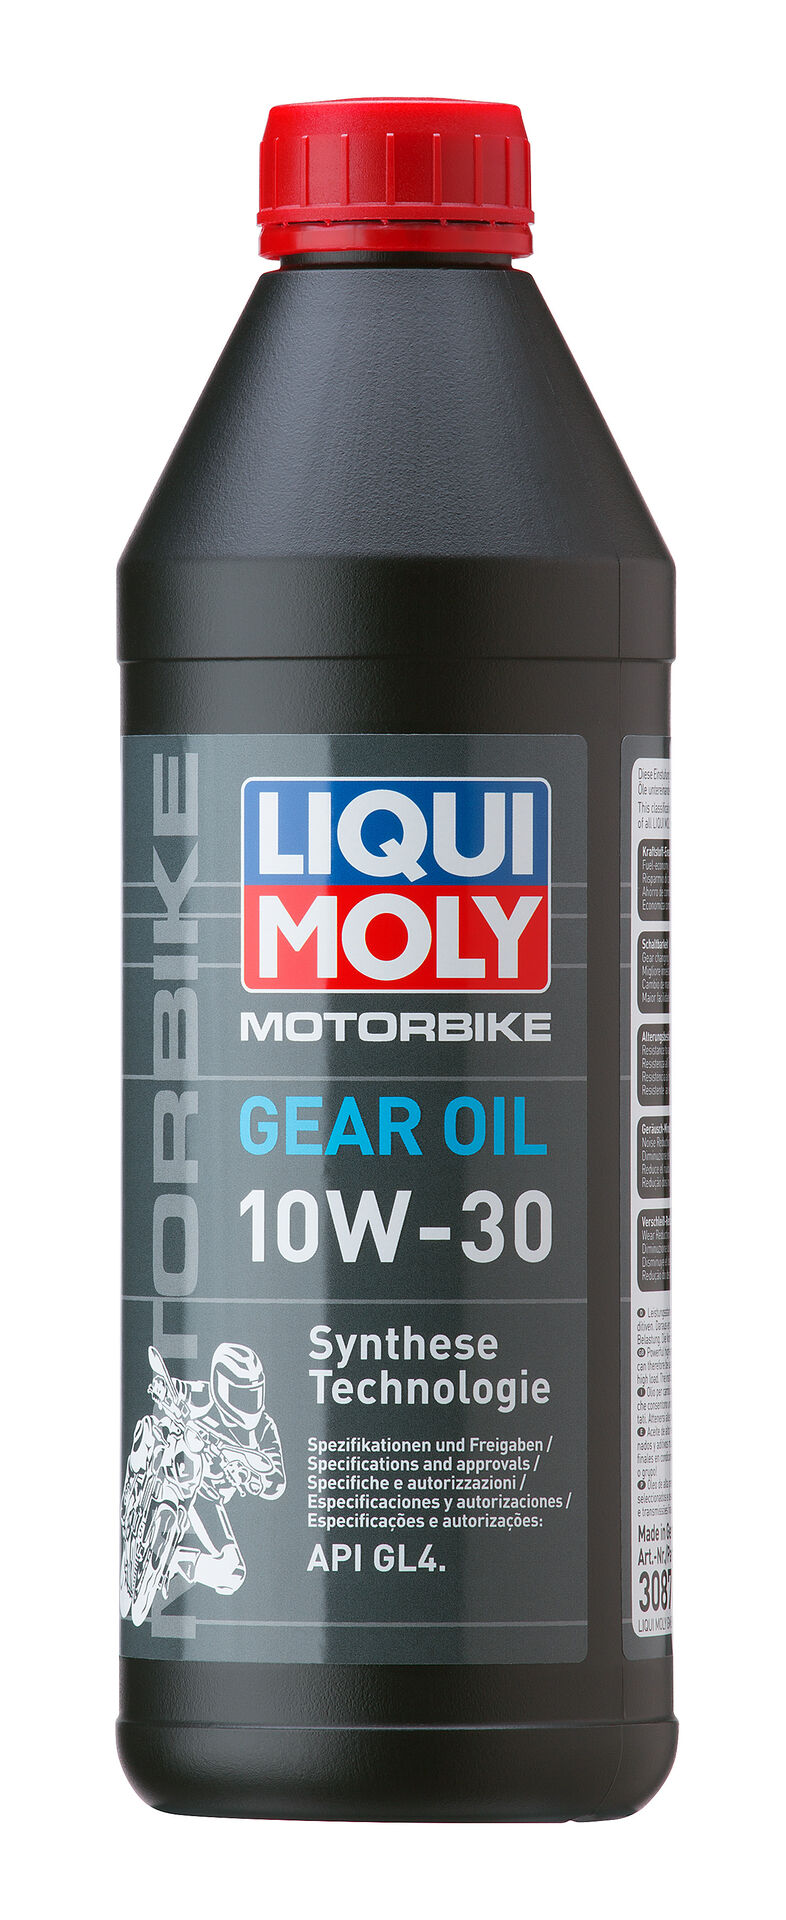 Liqui Moly Motorbike Gear Oil 10W-30 Motorrad Getriebeöl API GL4 1L